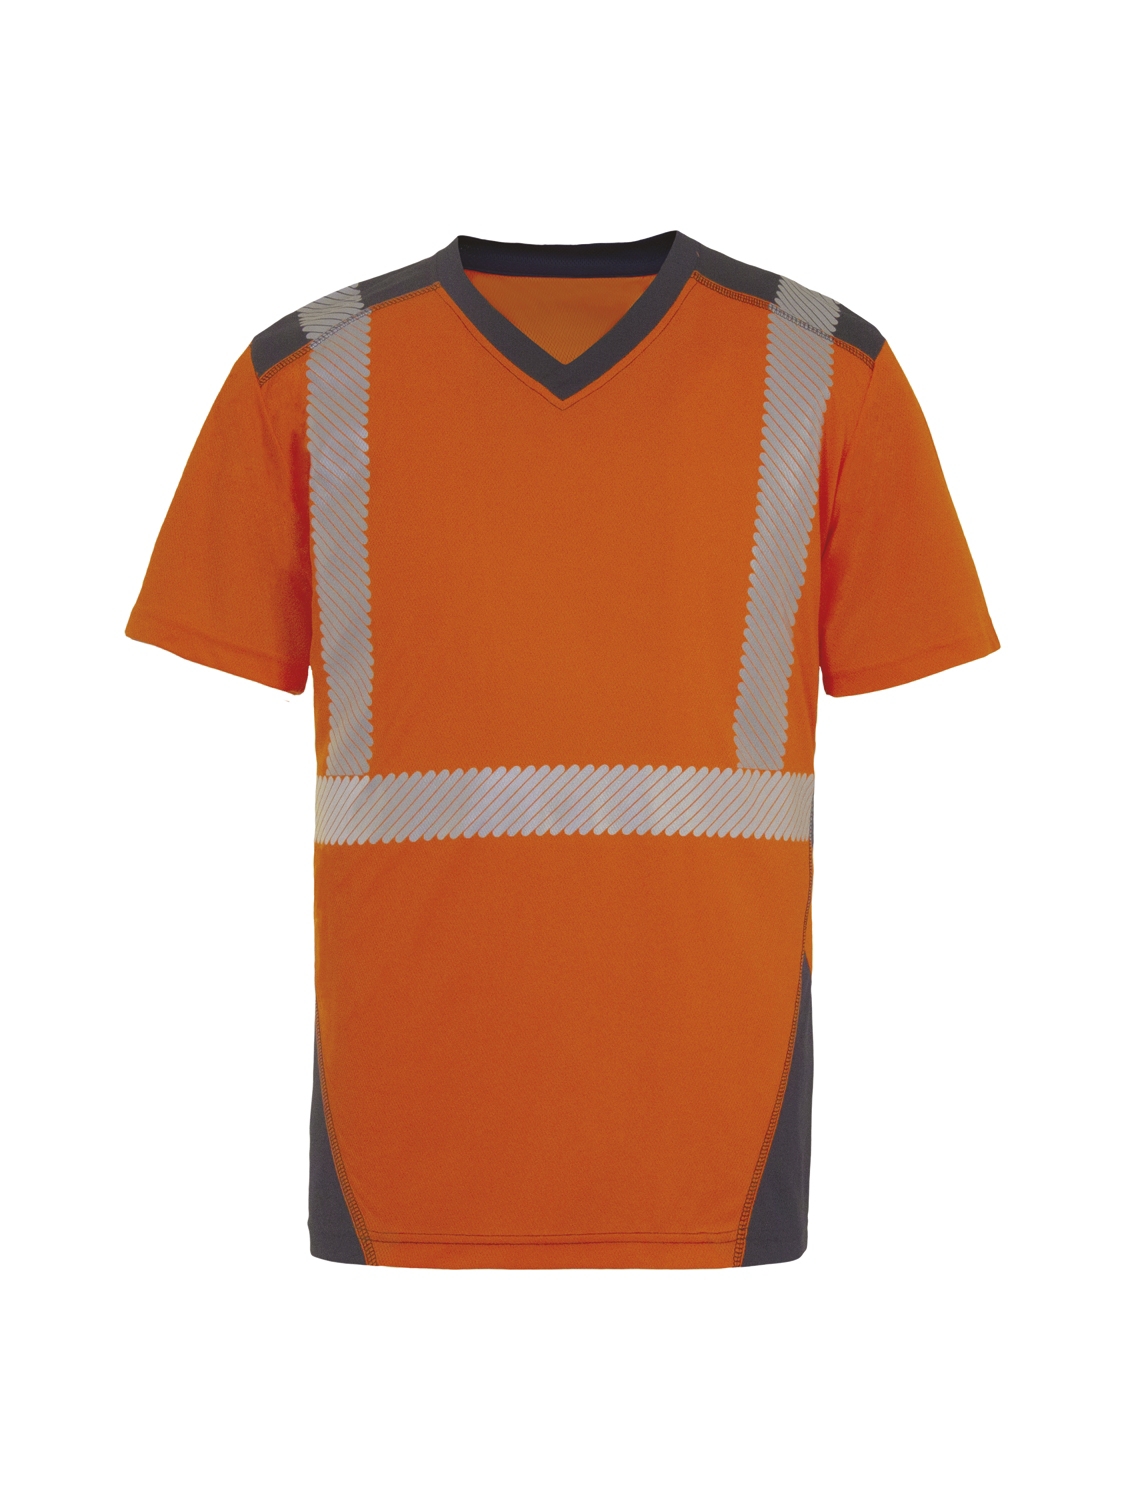 Tee-shirt Bali HV - Orange / Marine T2S